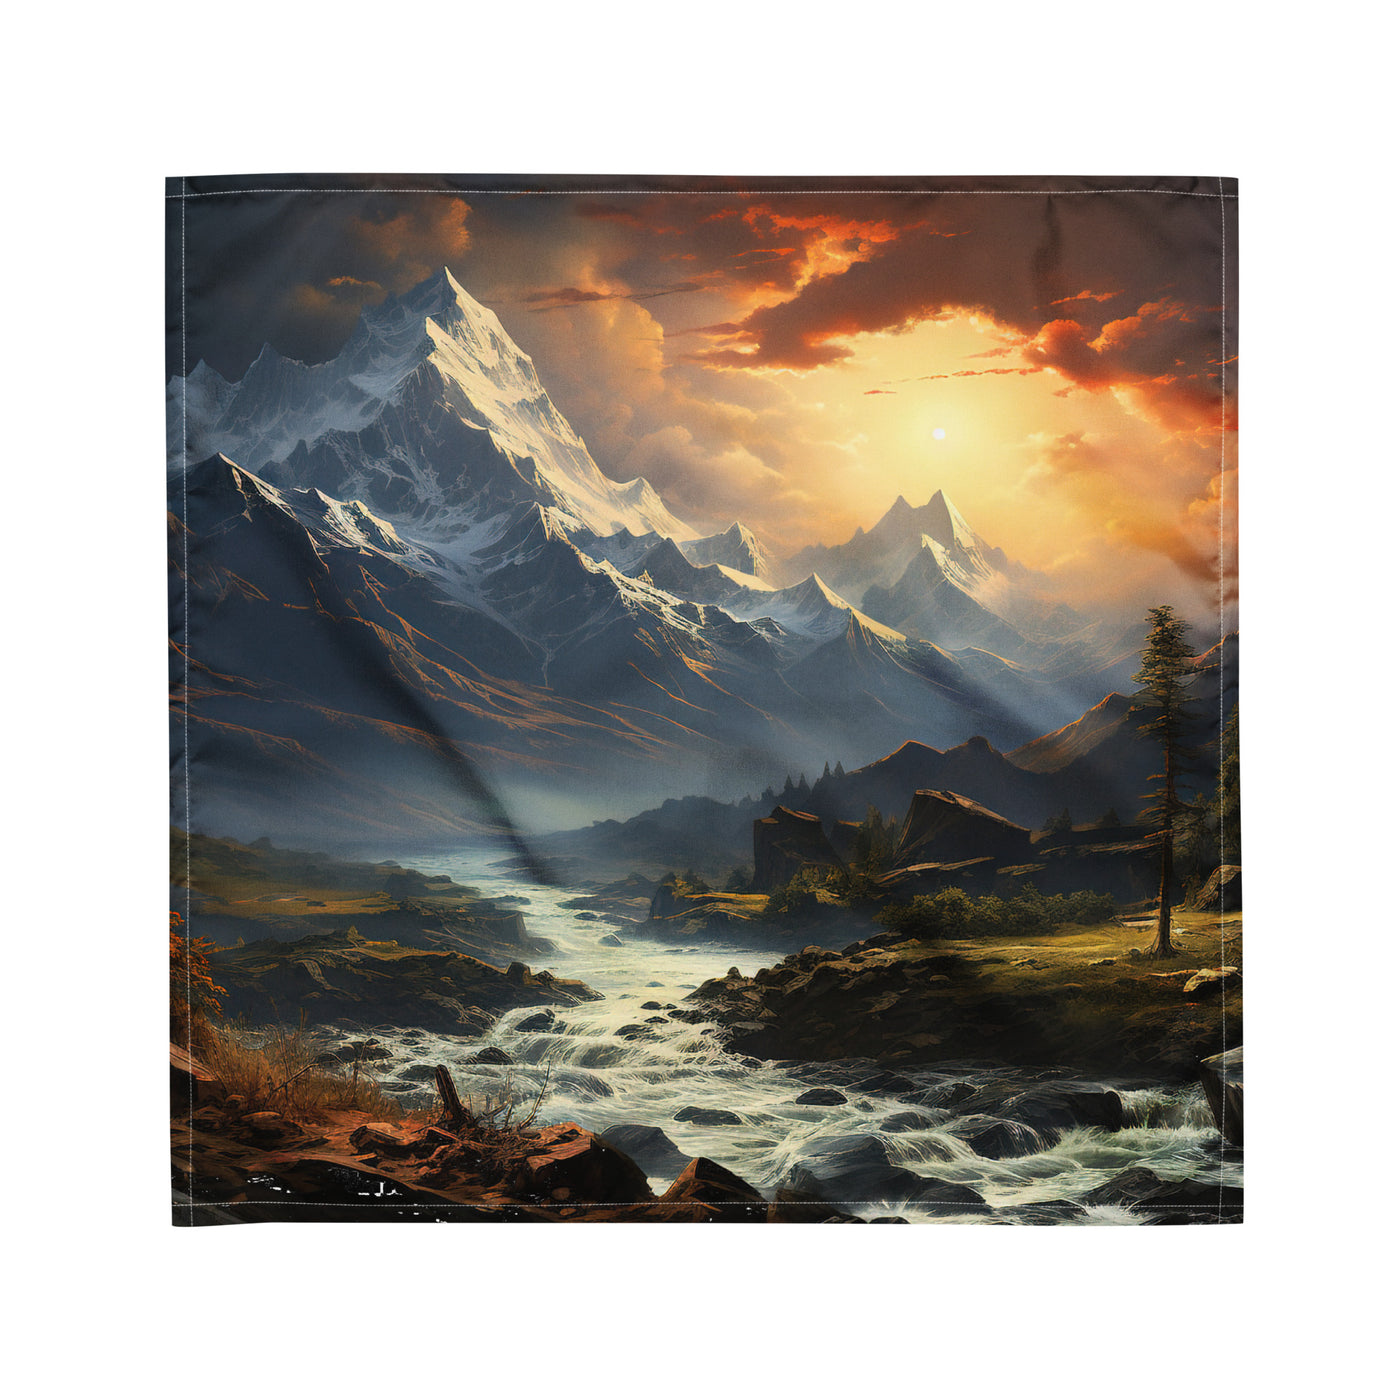 Berge, Sonne, steiniger Bach und Wolken - Epische Stimmung - Bandana (All-Over Print) berge xxx M